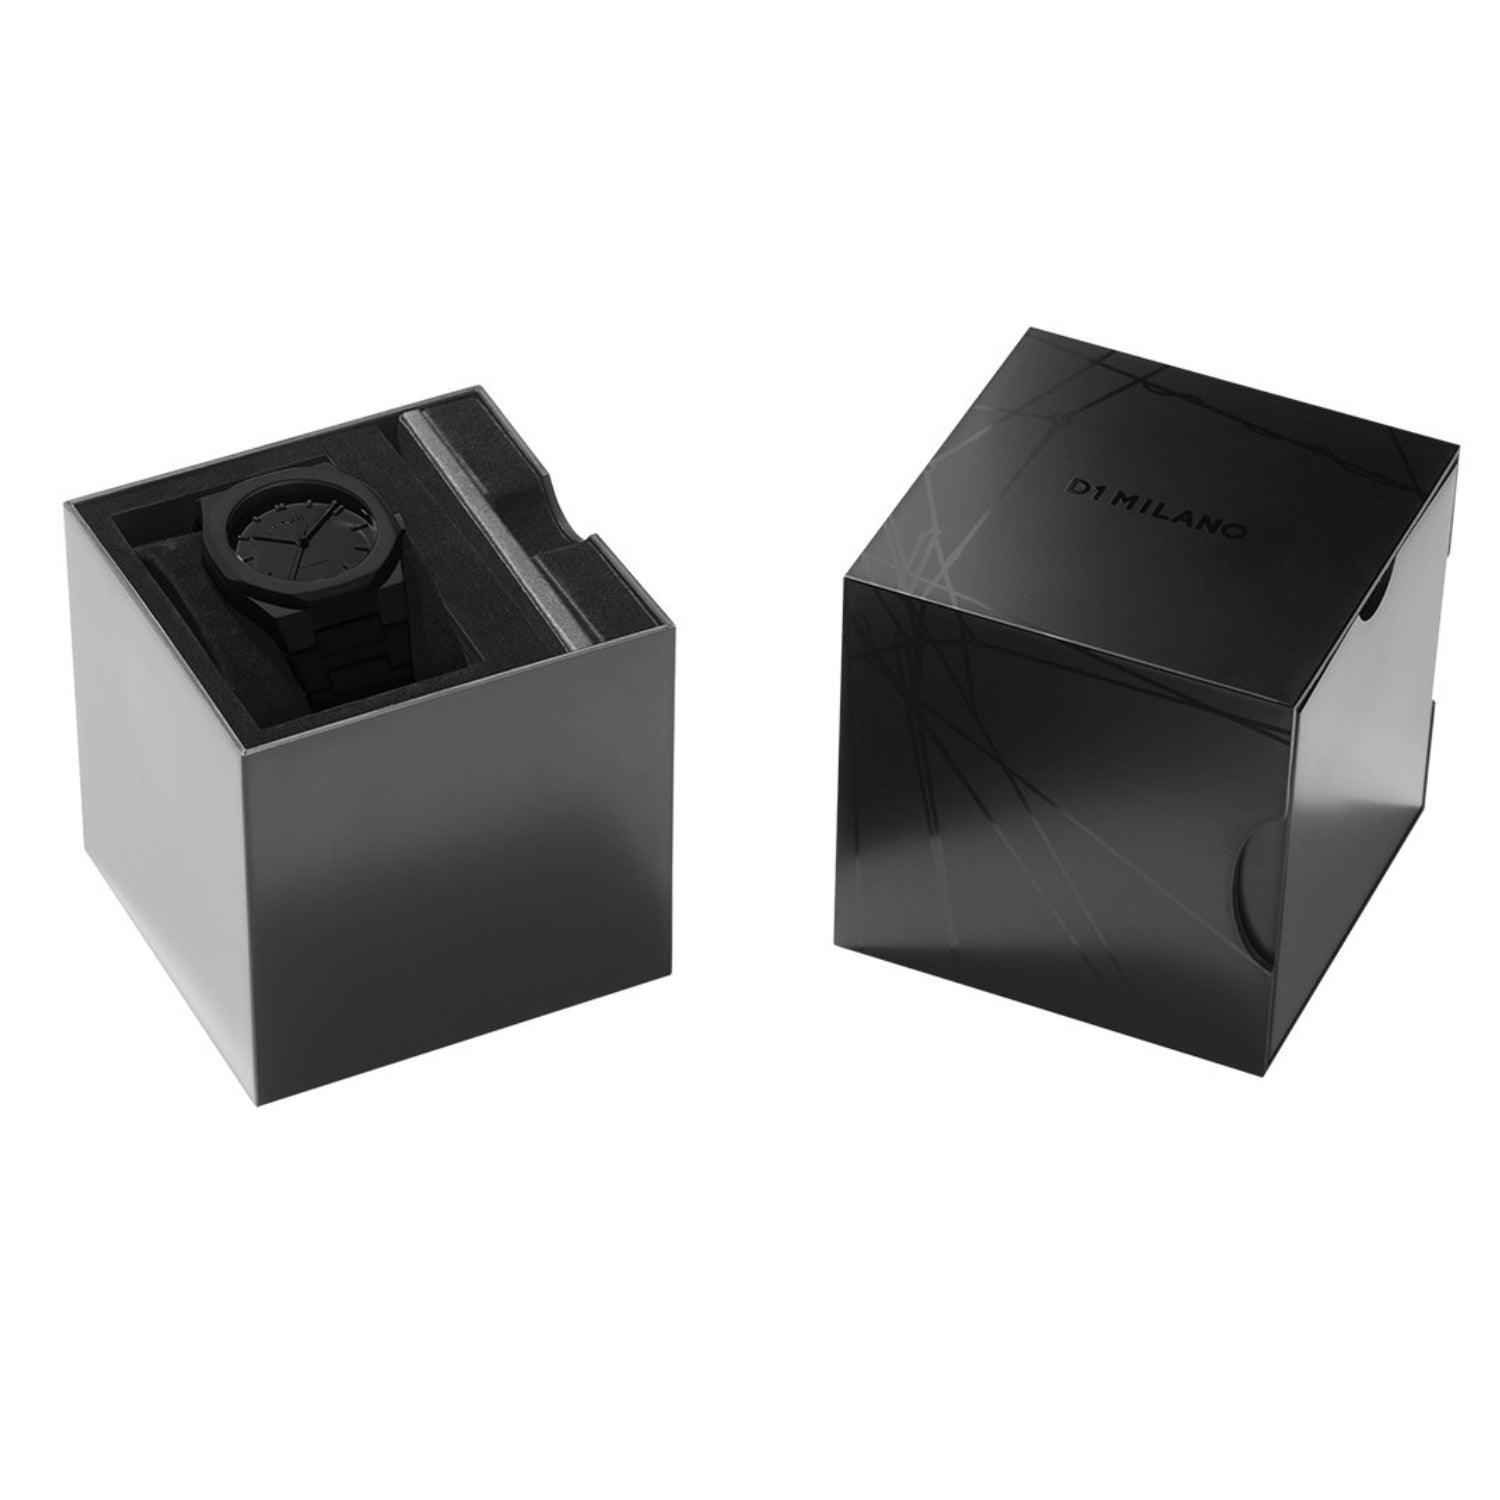 Ρολόι D1 Milano με μαύρο μπρασελέ και μαύρο καντράν σε πεντάγωνο σχήμα διαμέτρου 40.5 mm σε συσκευασία δώρου.